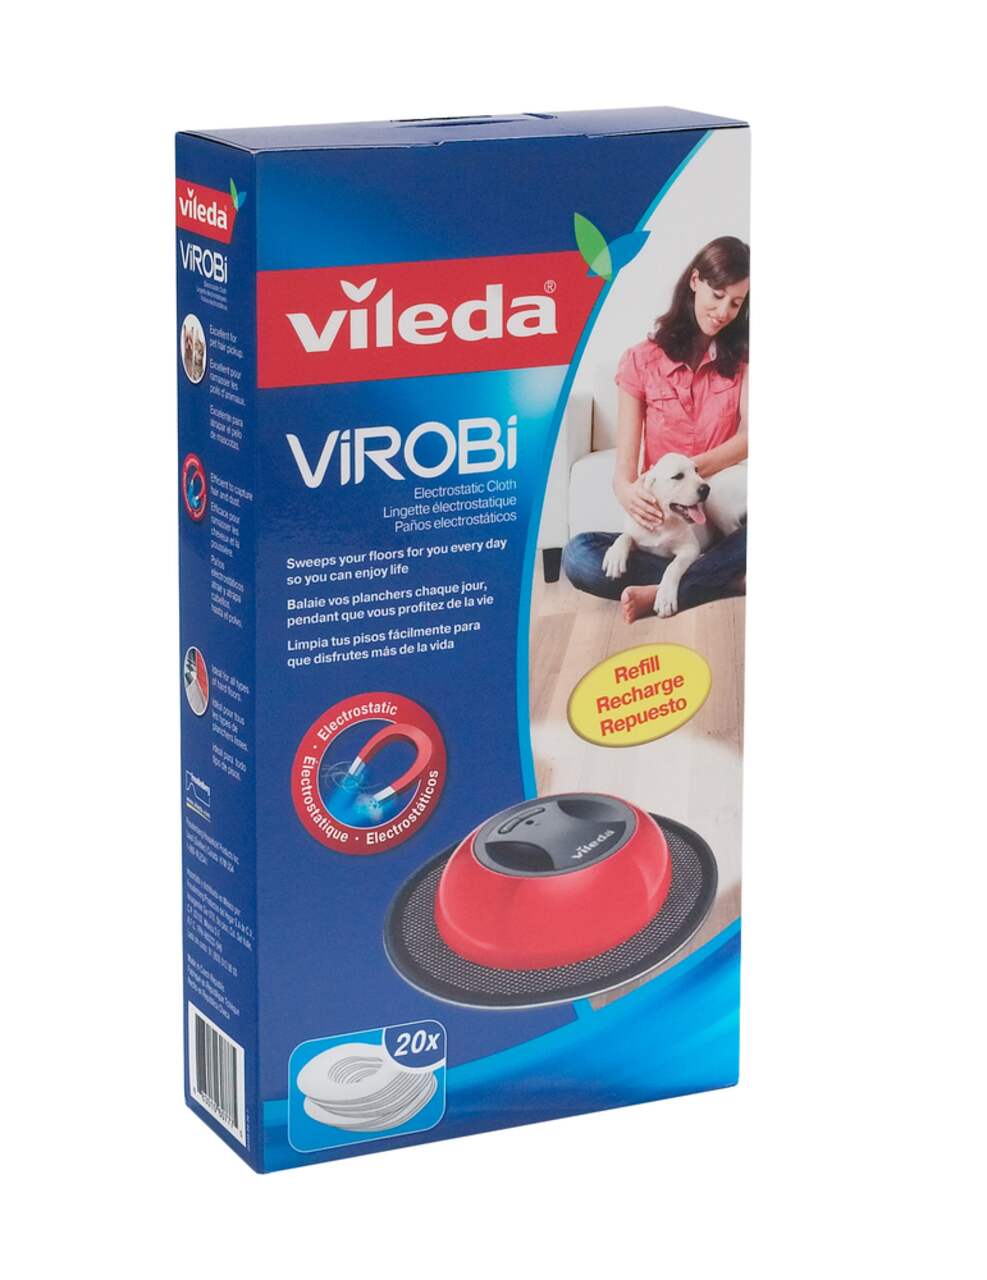 Recambio Vileda Virobi - 20 unidades